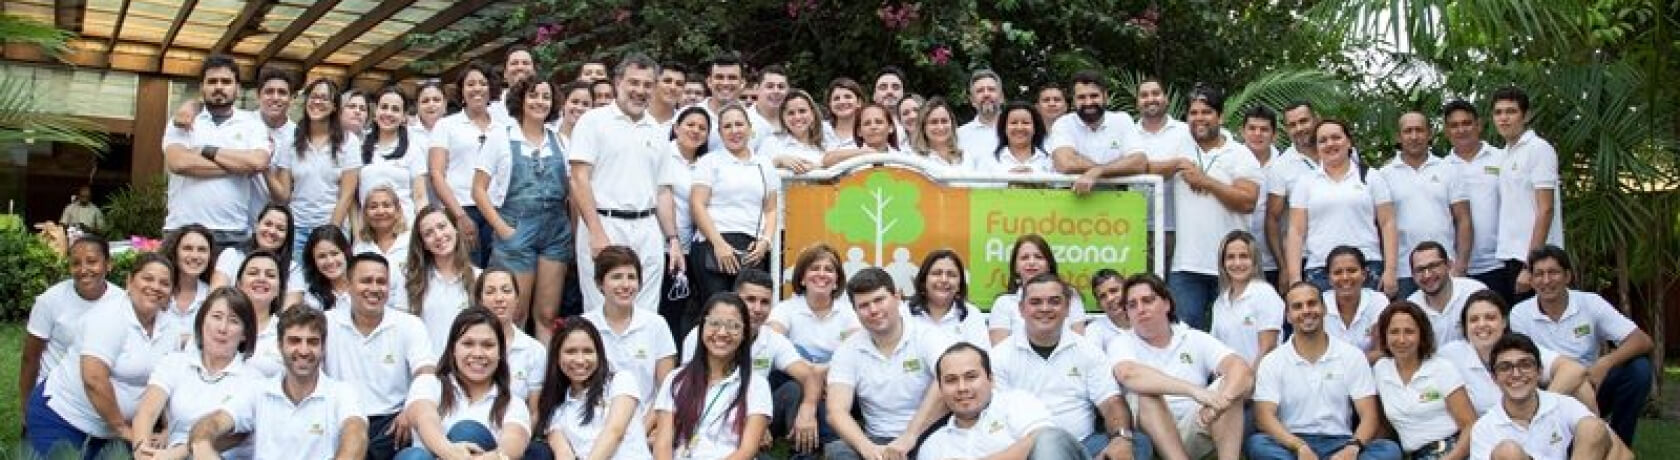 foundation-amazonia-sustainable